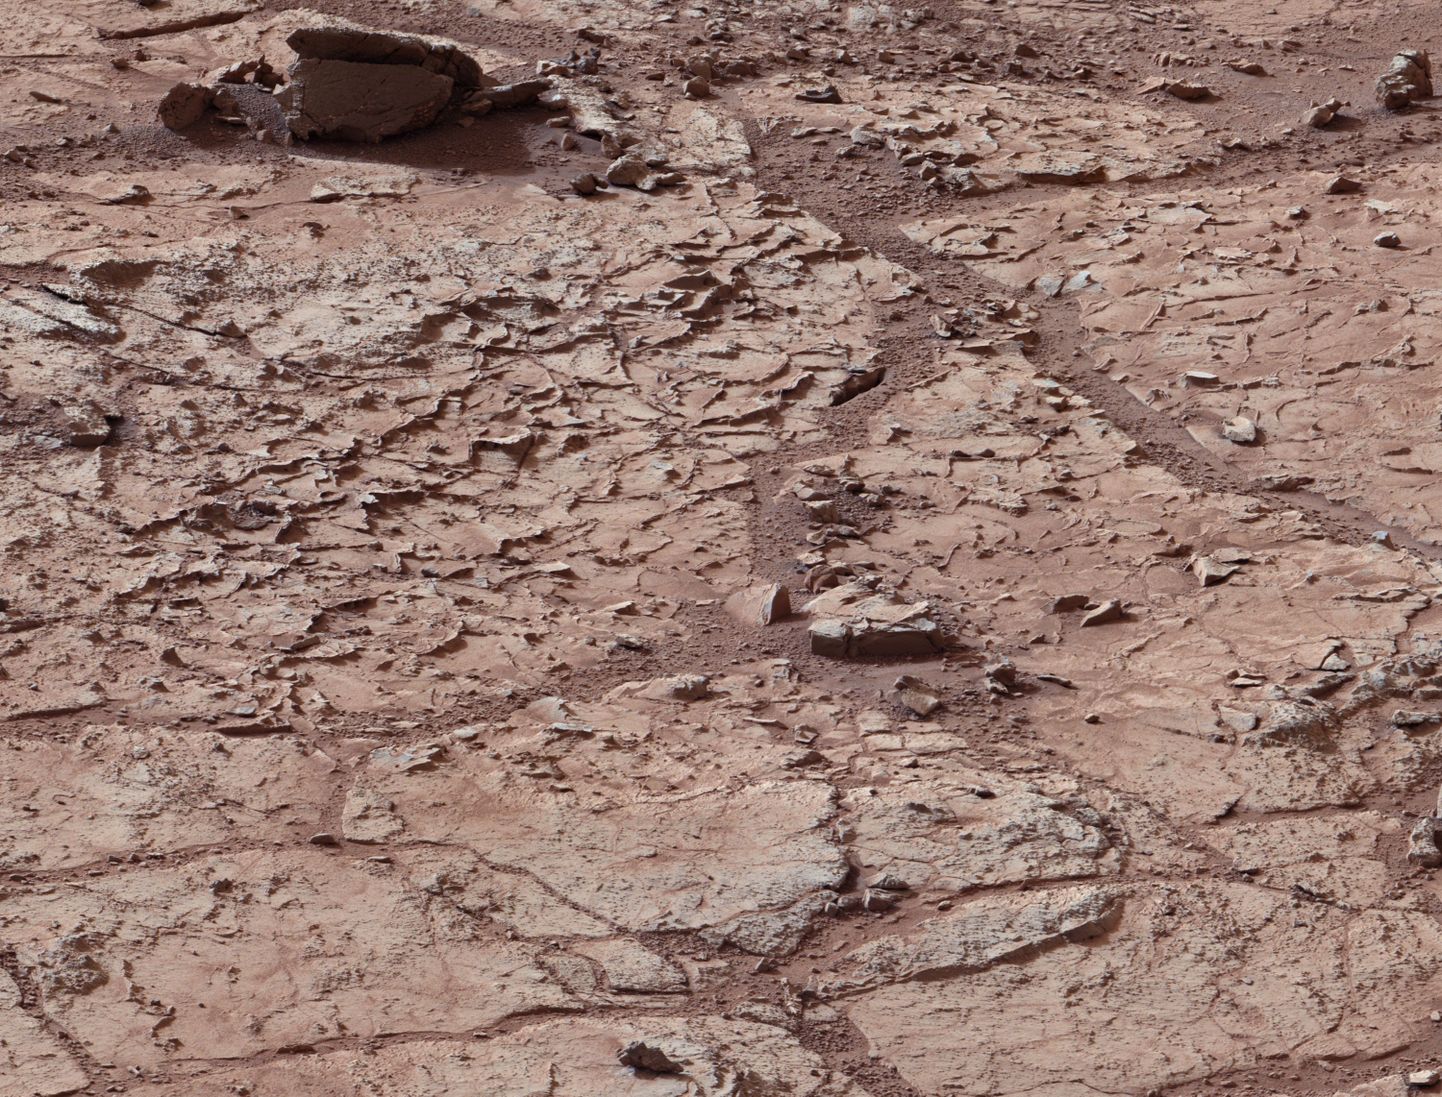 Marsil võib siiski leiduda mikrobioloogilist elu?